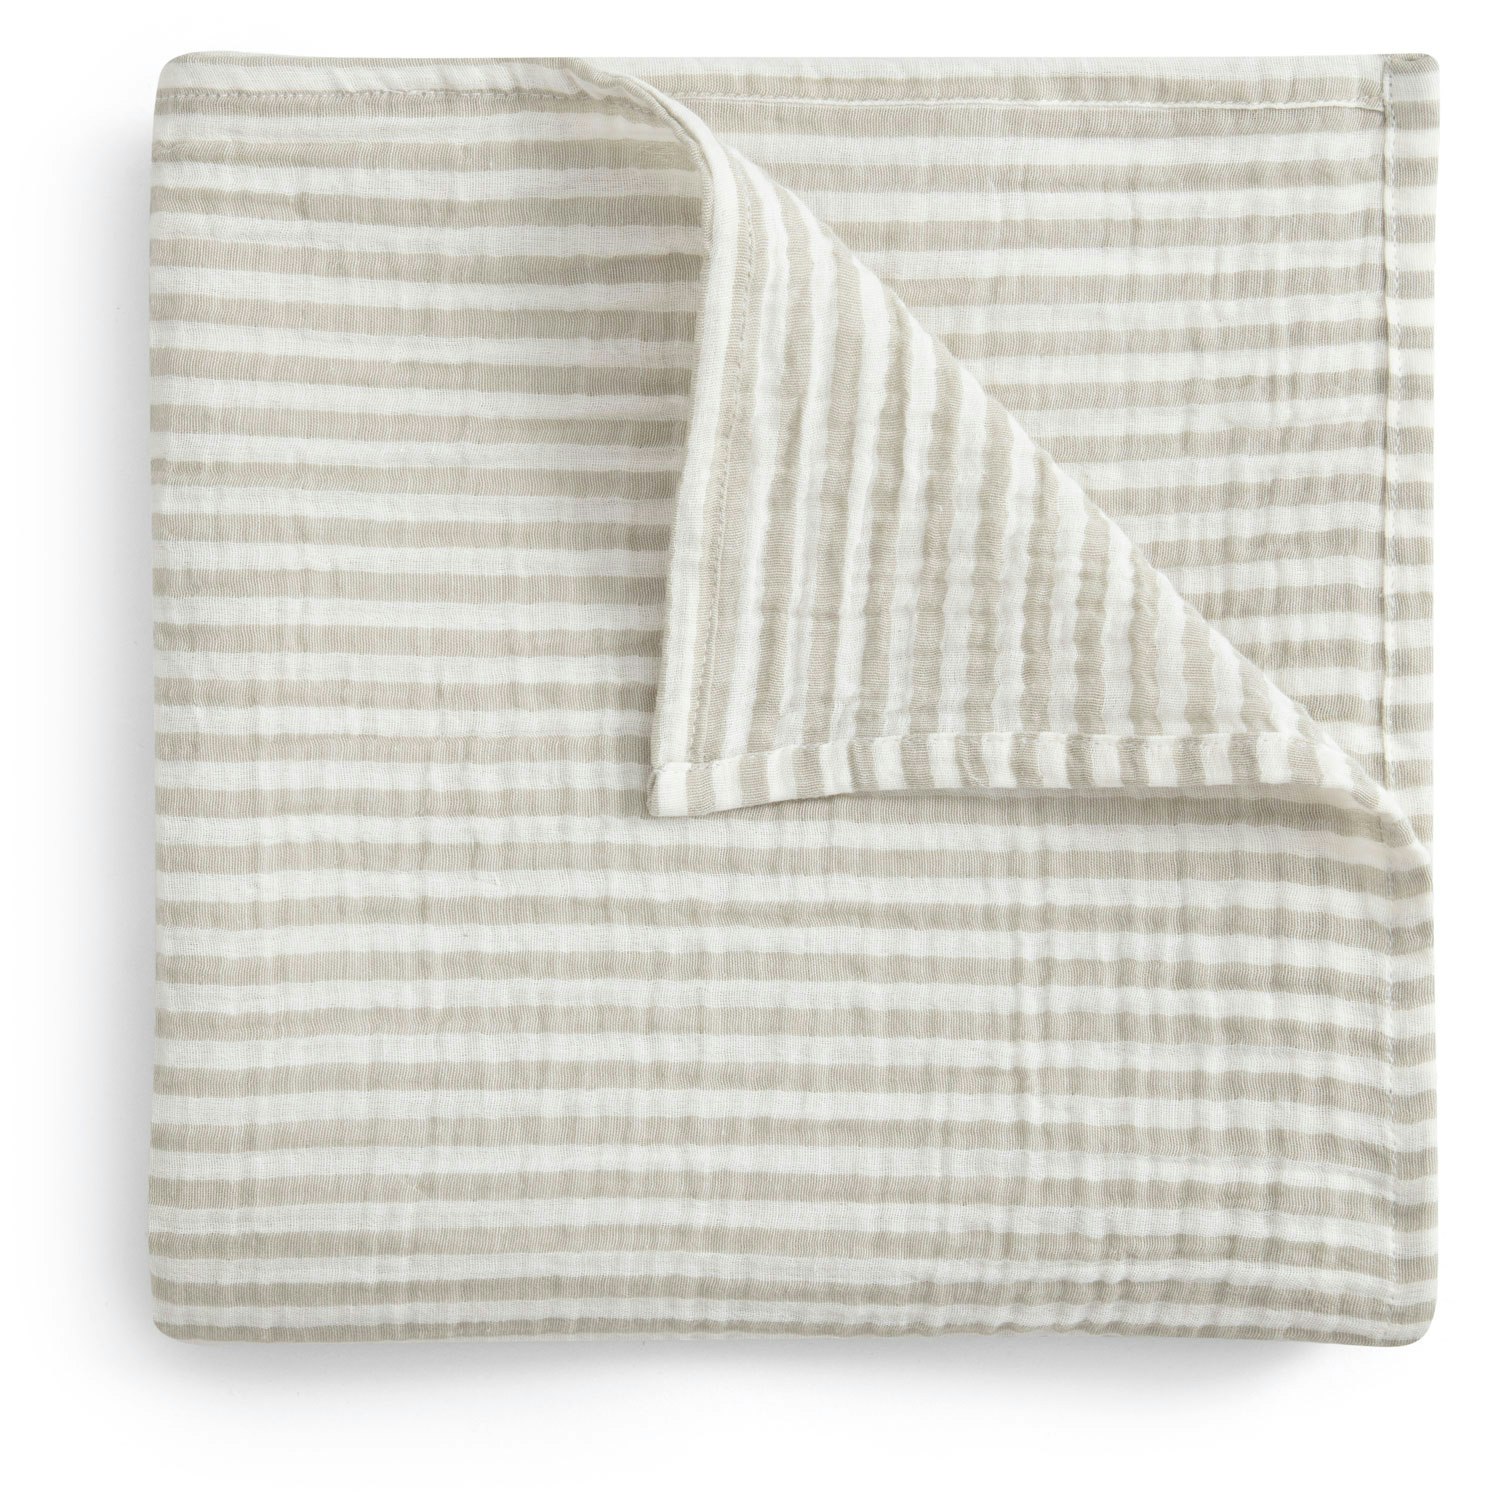 Garbo & Friends-Stripe Anjou Babysvøb Musselin, 110x110 cm